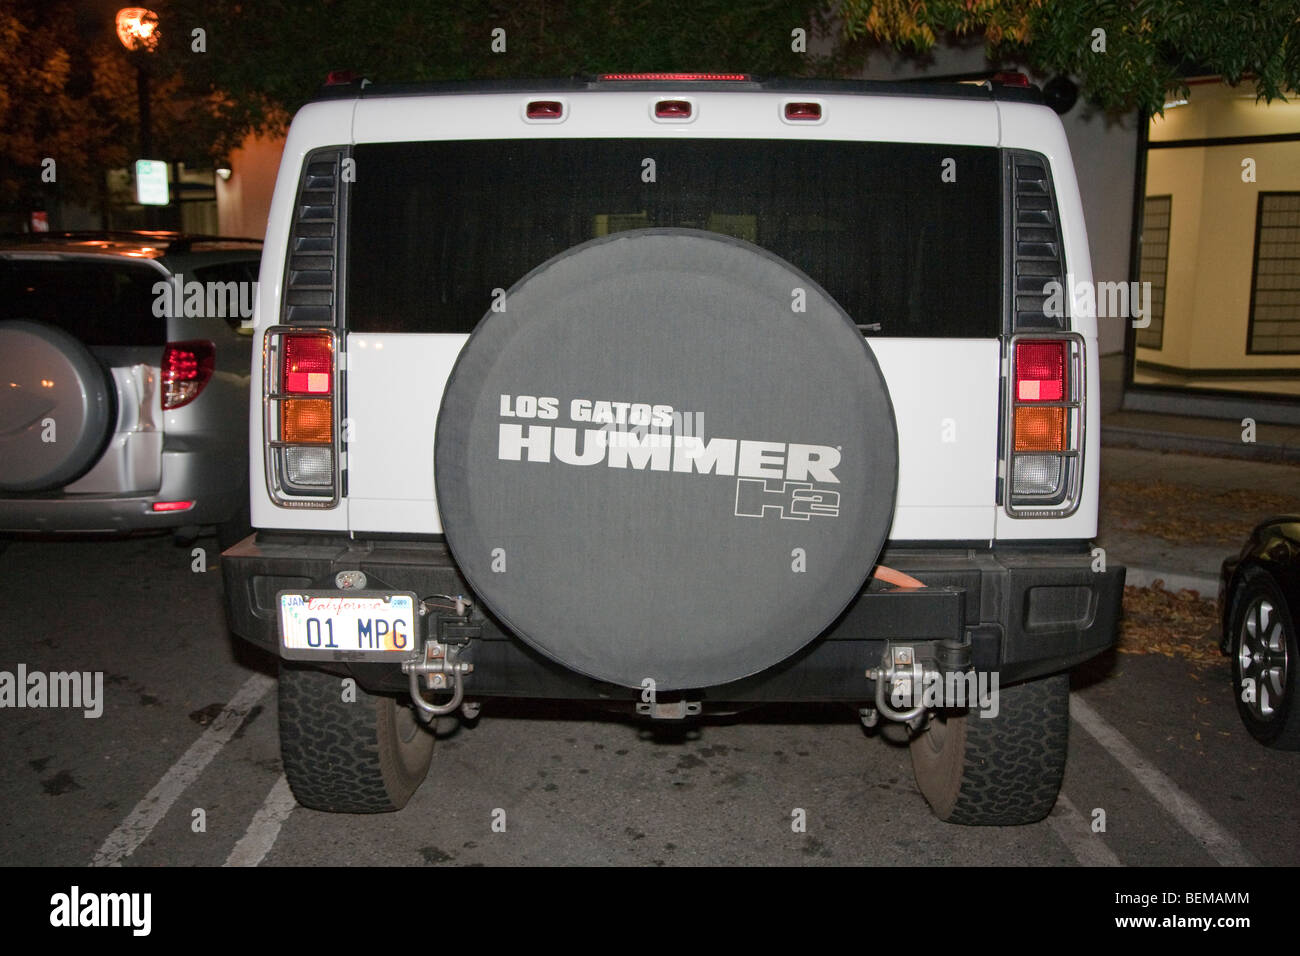 Gas fressenden Hummer H2 mit einer benutzerdefinierten Lizenz Platte 01 MPG (1 Meile pro Gallone). Stockfoto